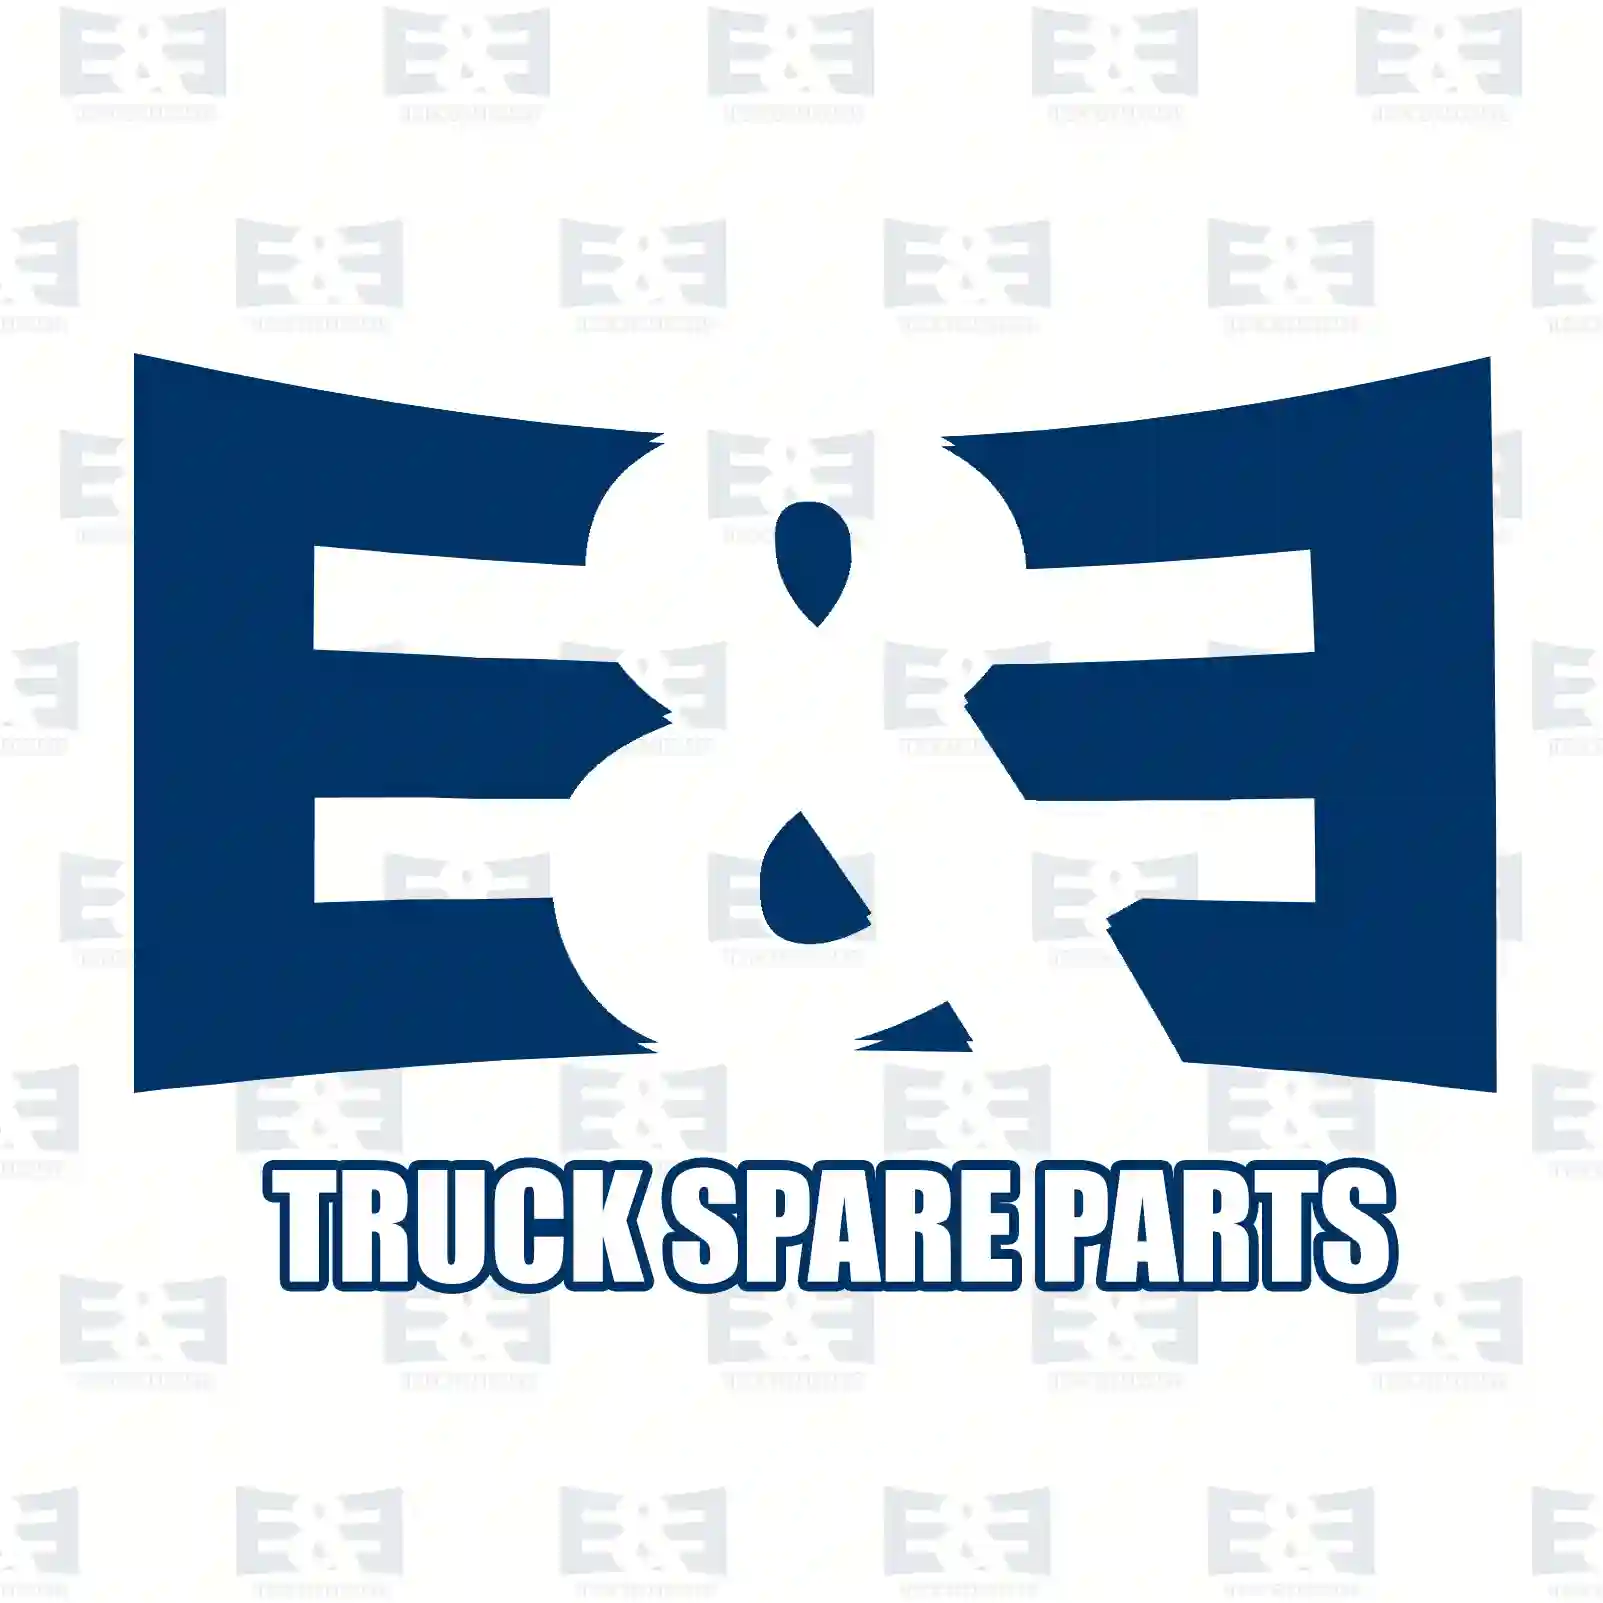  Stud coupling || E&E Truck Spare Parts | Truck Spare Parts, Auotomotive Spare Parts